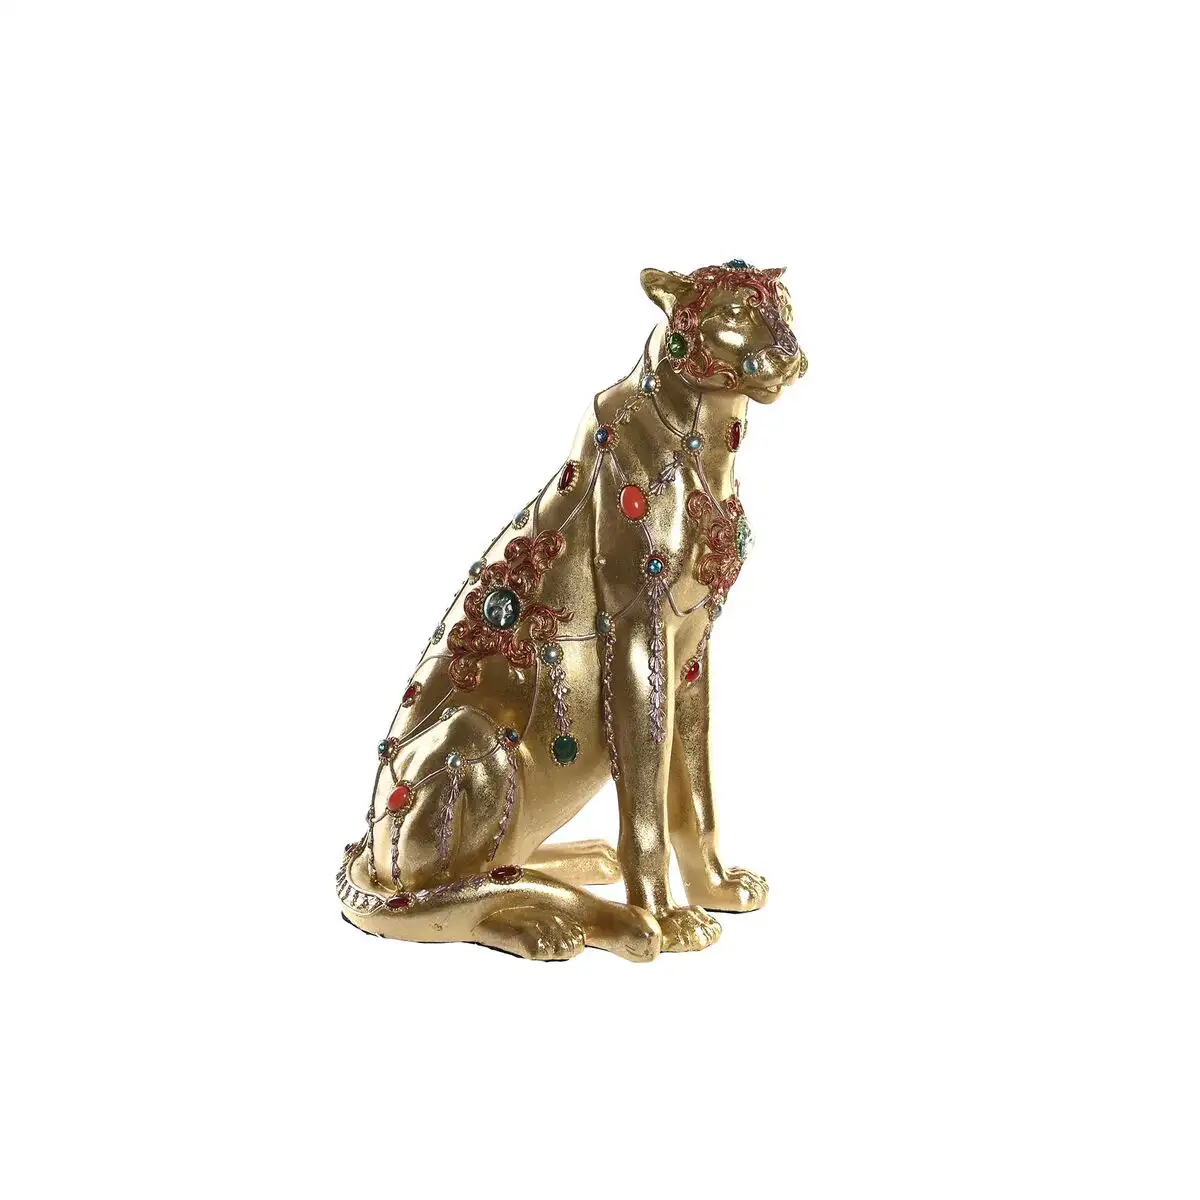 Figurine decorative dkd home decor leopard resine colonial 25 5 x 17 x 33 cm _2276. DIAYTAR SENEGAL - Là où Chaque Achat Contribue à un Rêve. Naviguez à travers notre boutique en ligne et soutenez des artisans talentueux tout en acquérant des trésors.